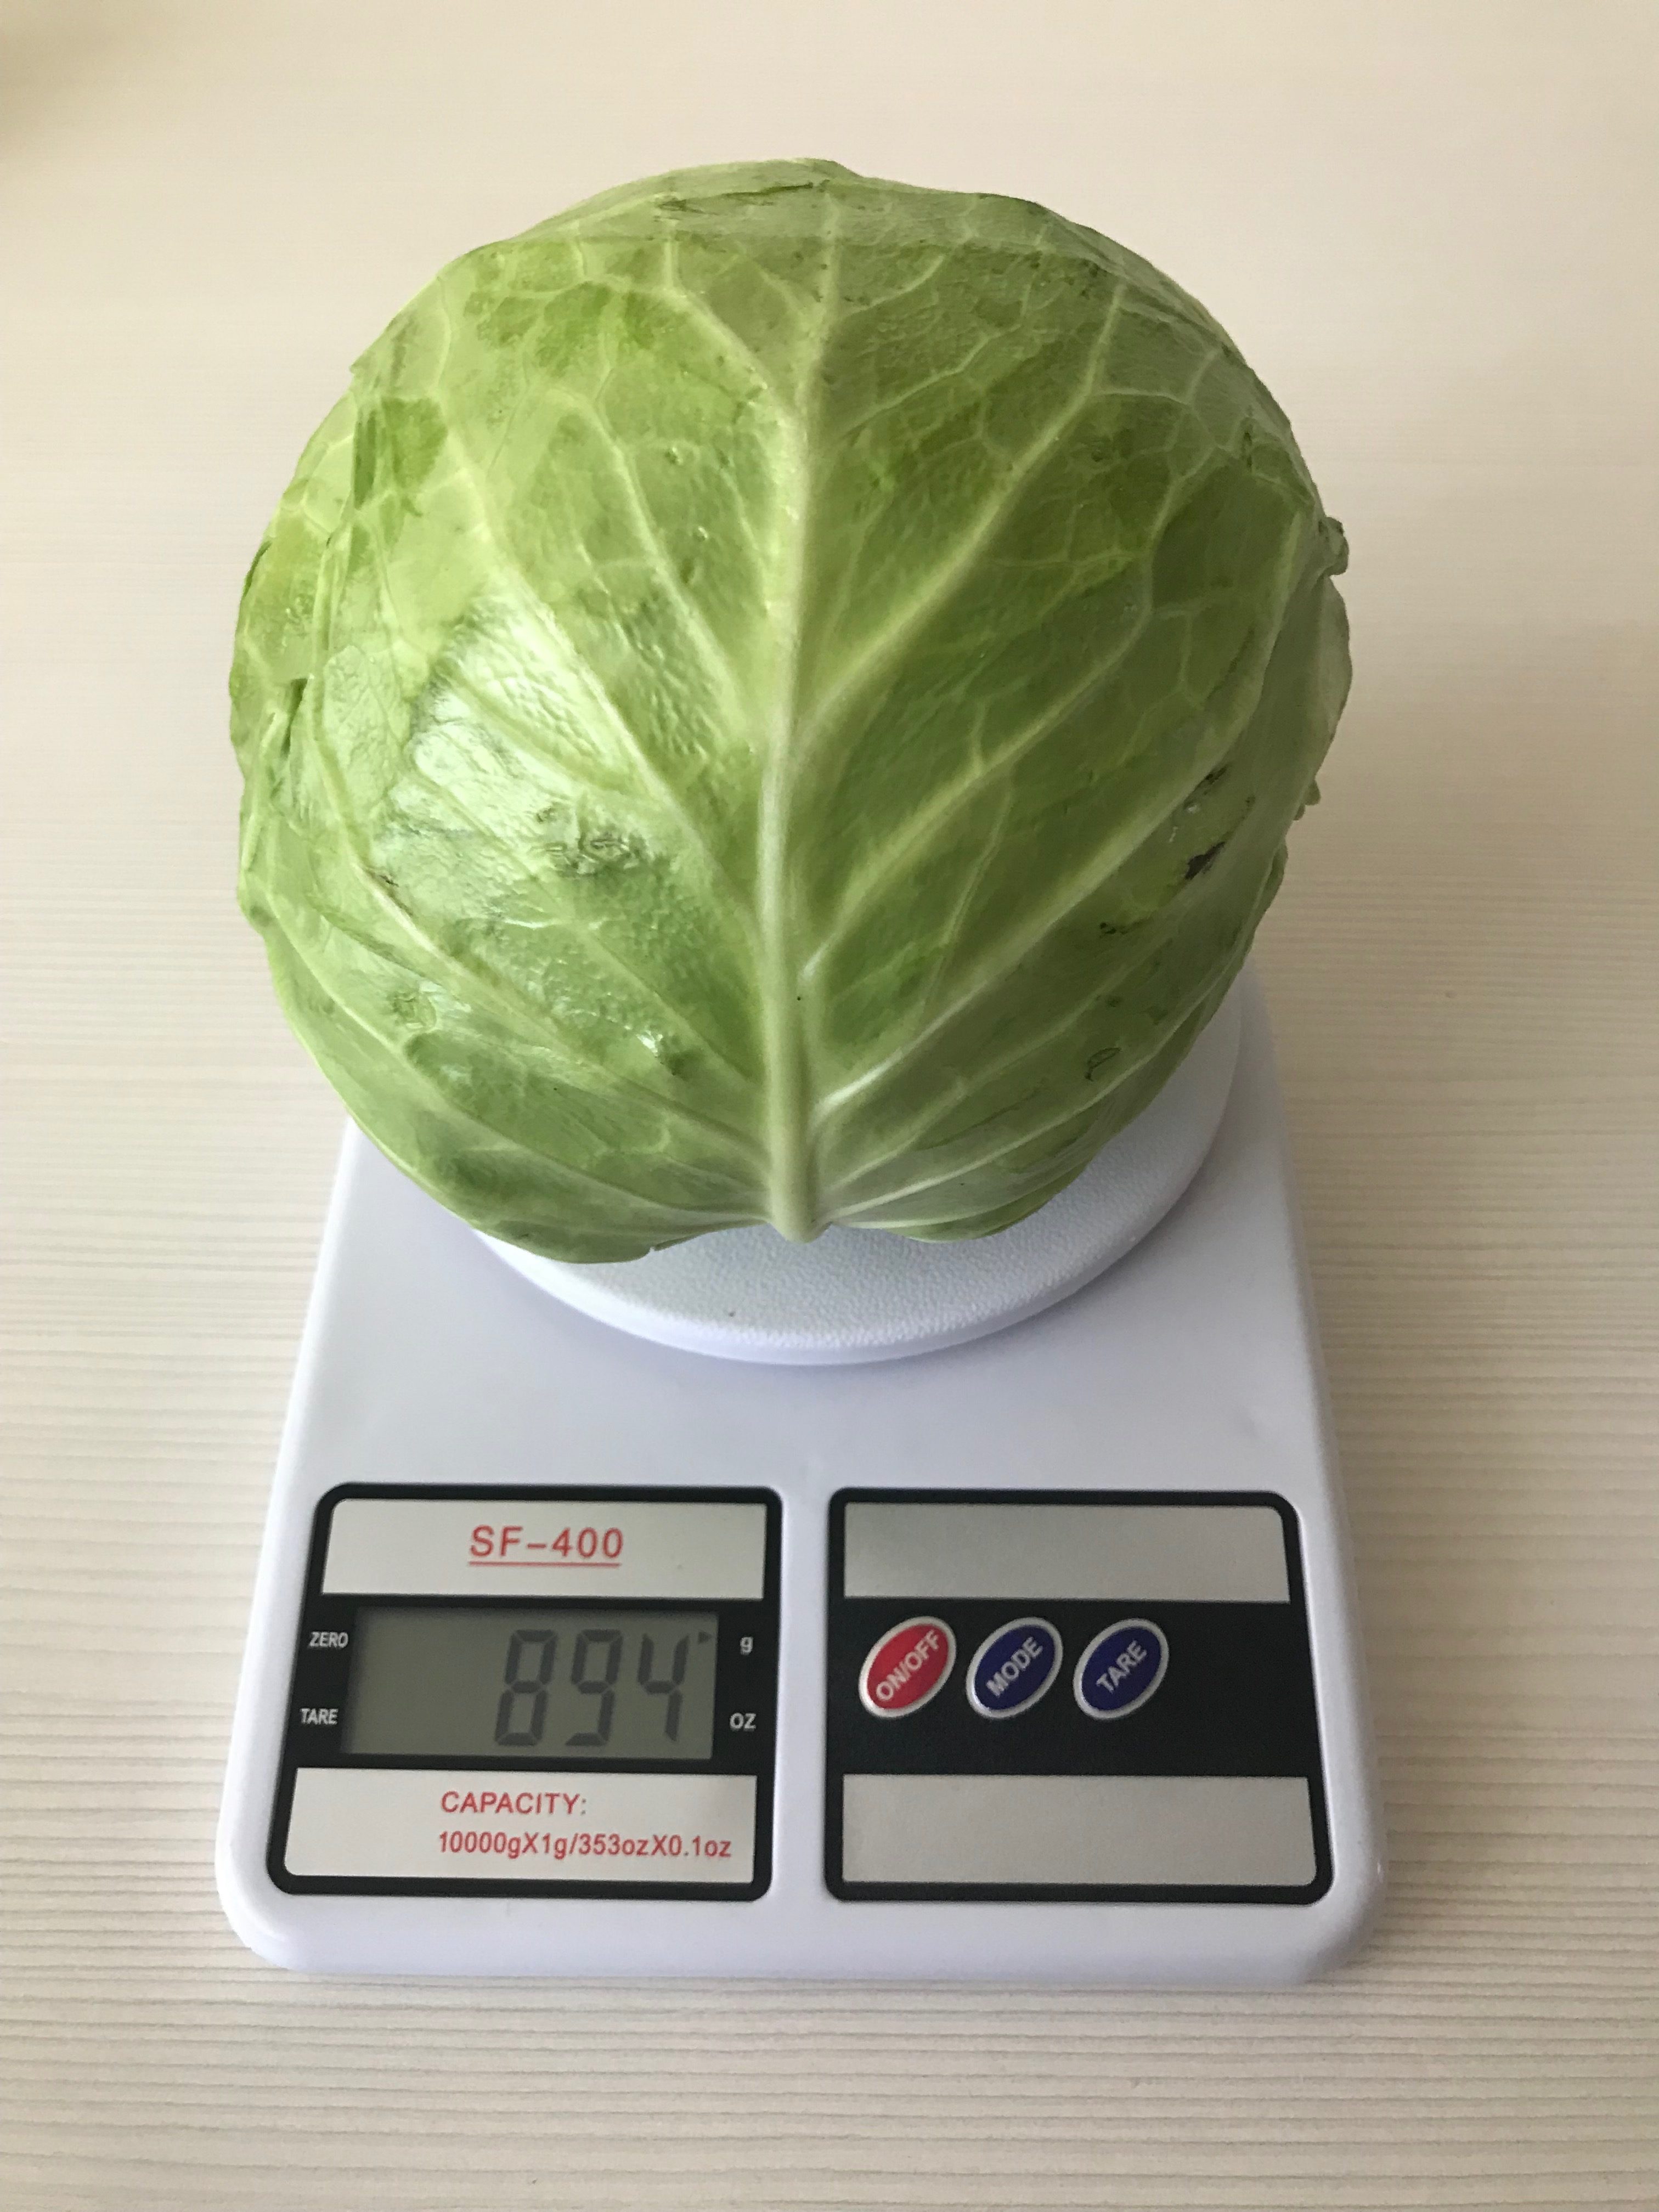 head cabbage weight (average)